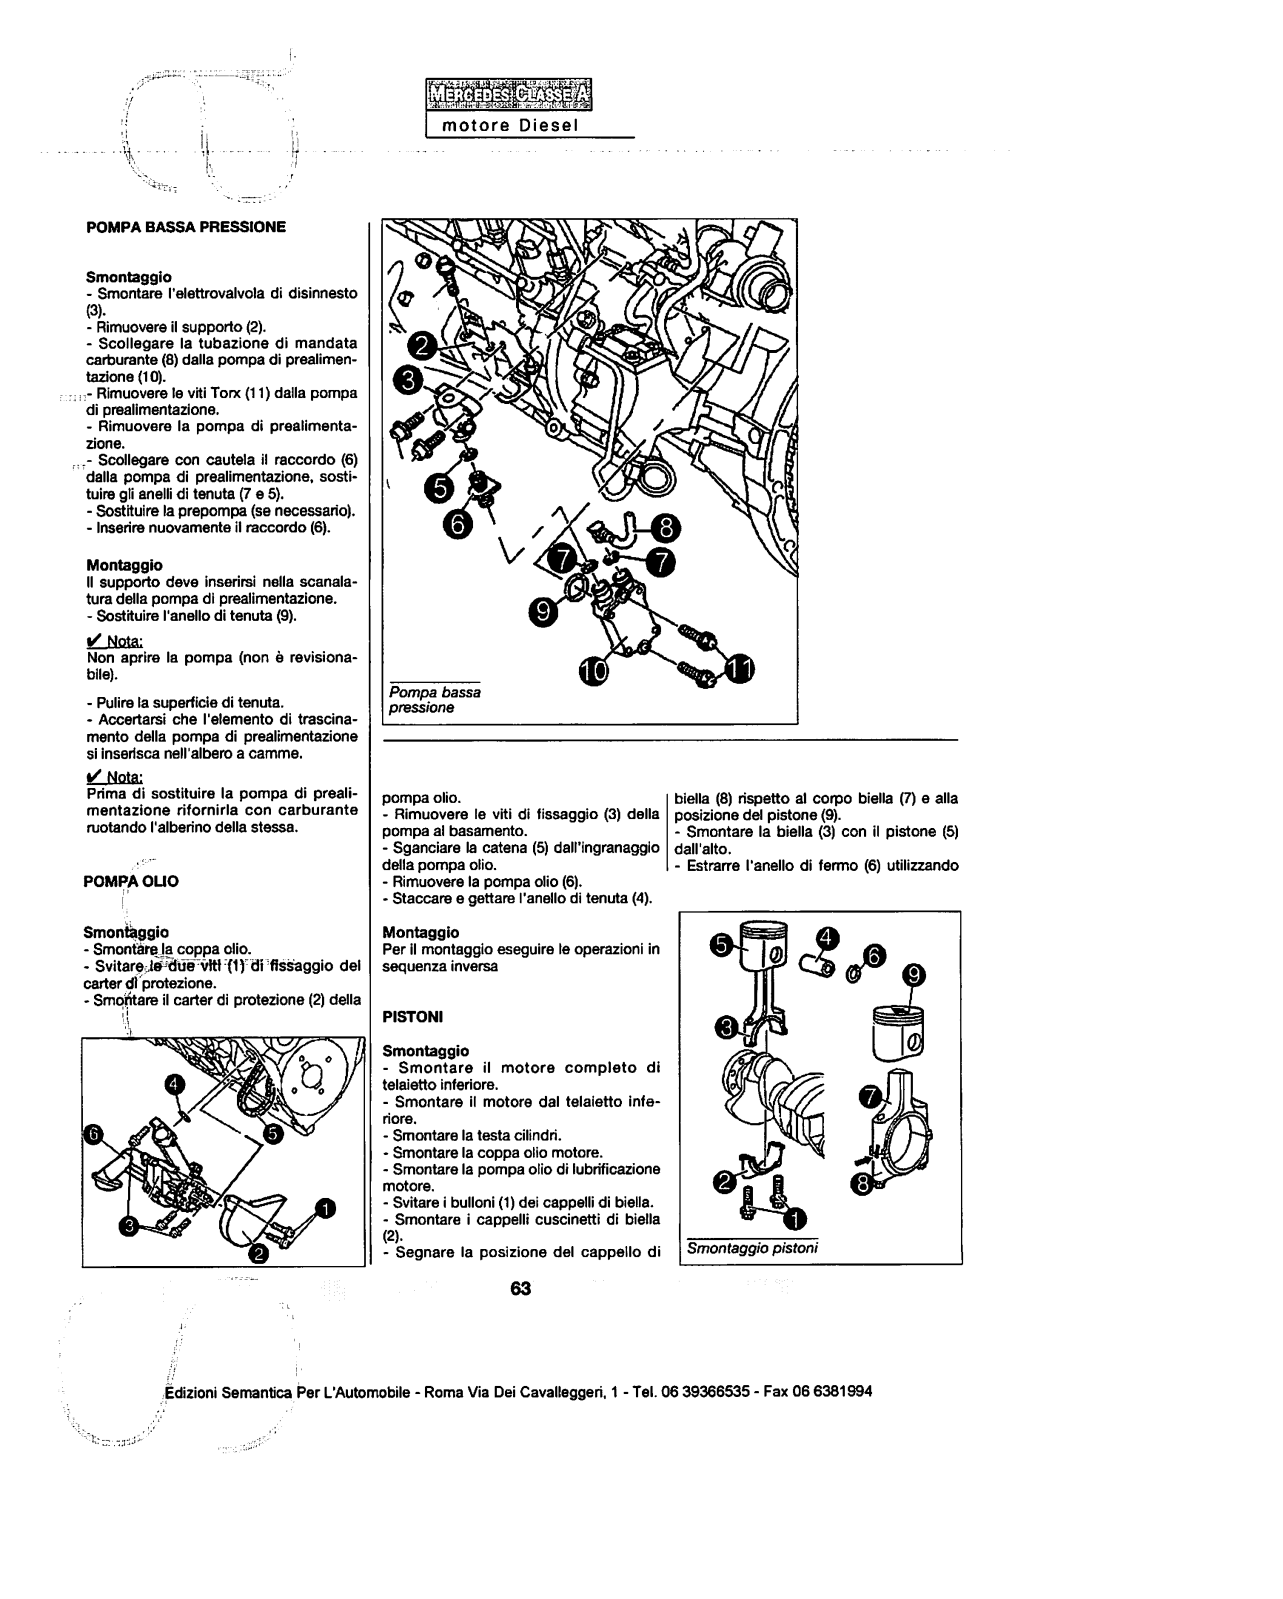 w168 - (W168): Manual técnico - tudo sobre - 1997 a 2004 - italiano 2ez5o9v